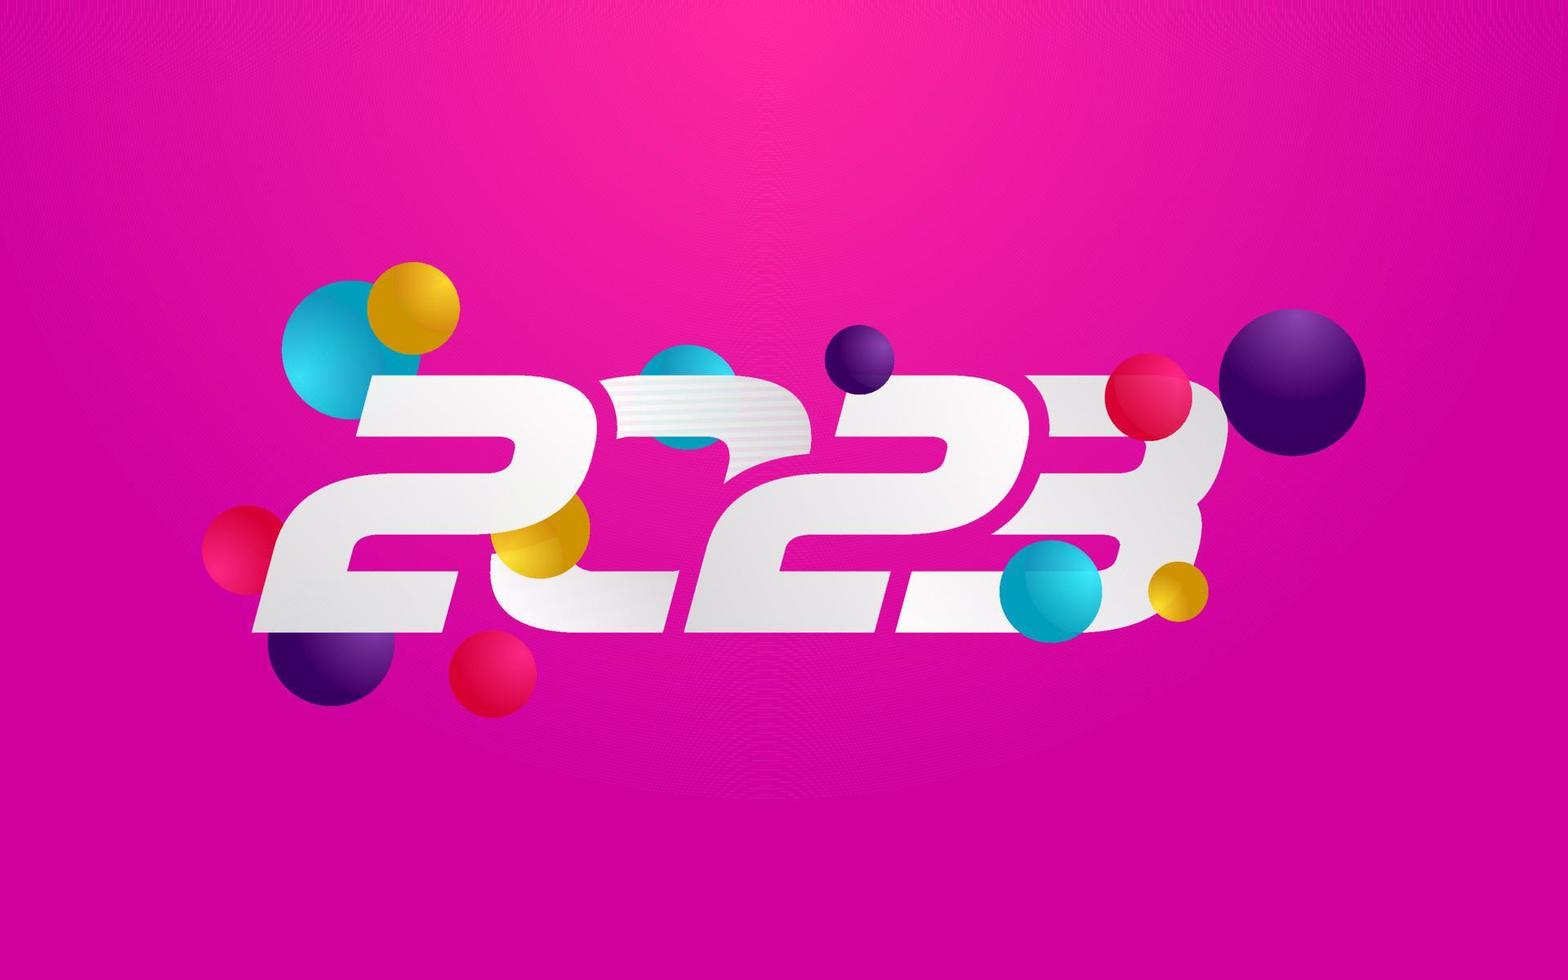 ny 2023 år typografi design. 2023 tal logotyp illustration vektor